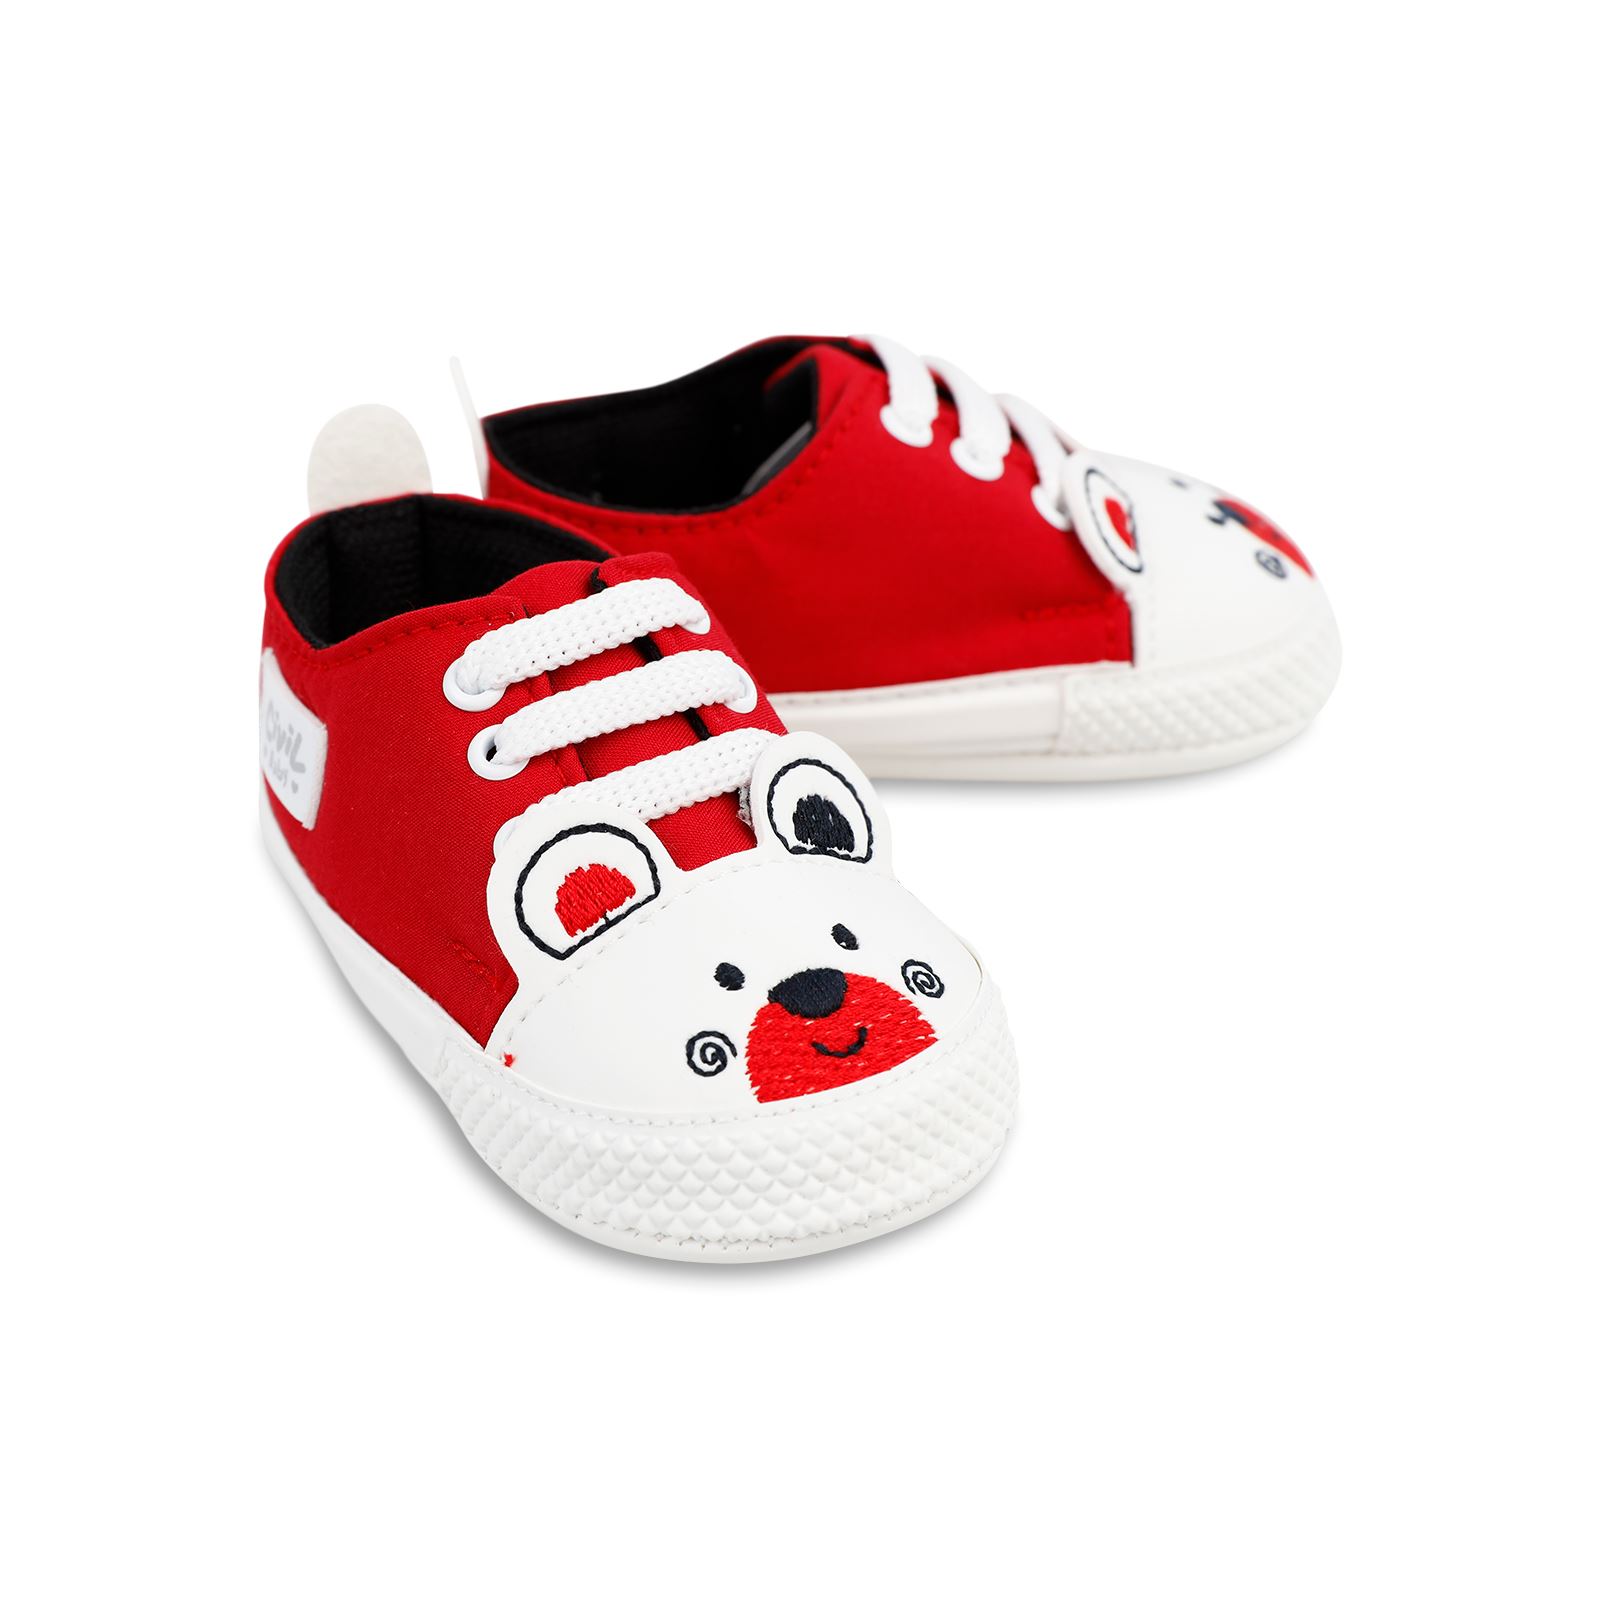 Civil Baby Erkek Bebek Patik Ayakkabı 179 Numara Kırmızı